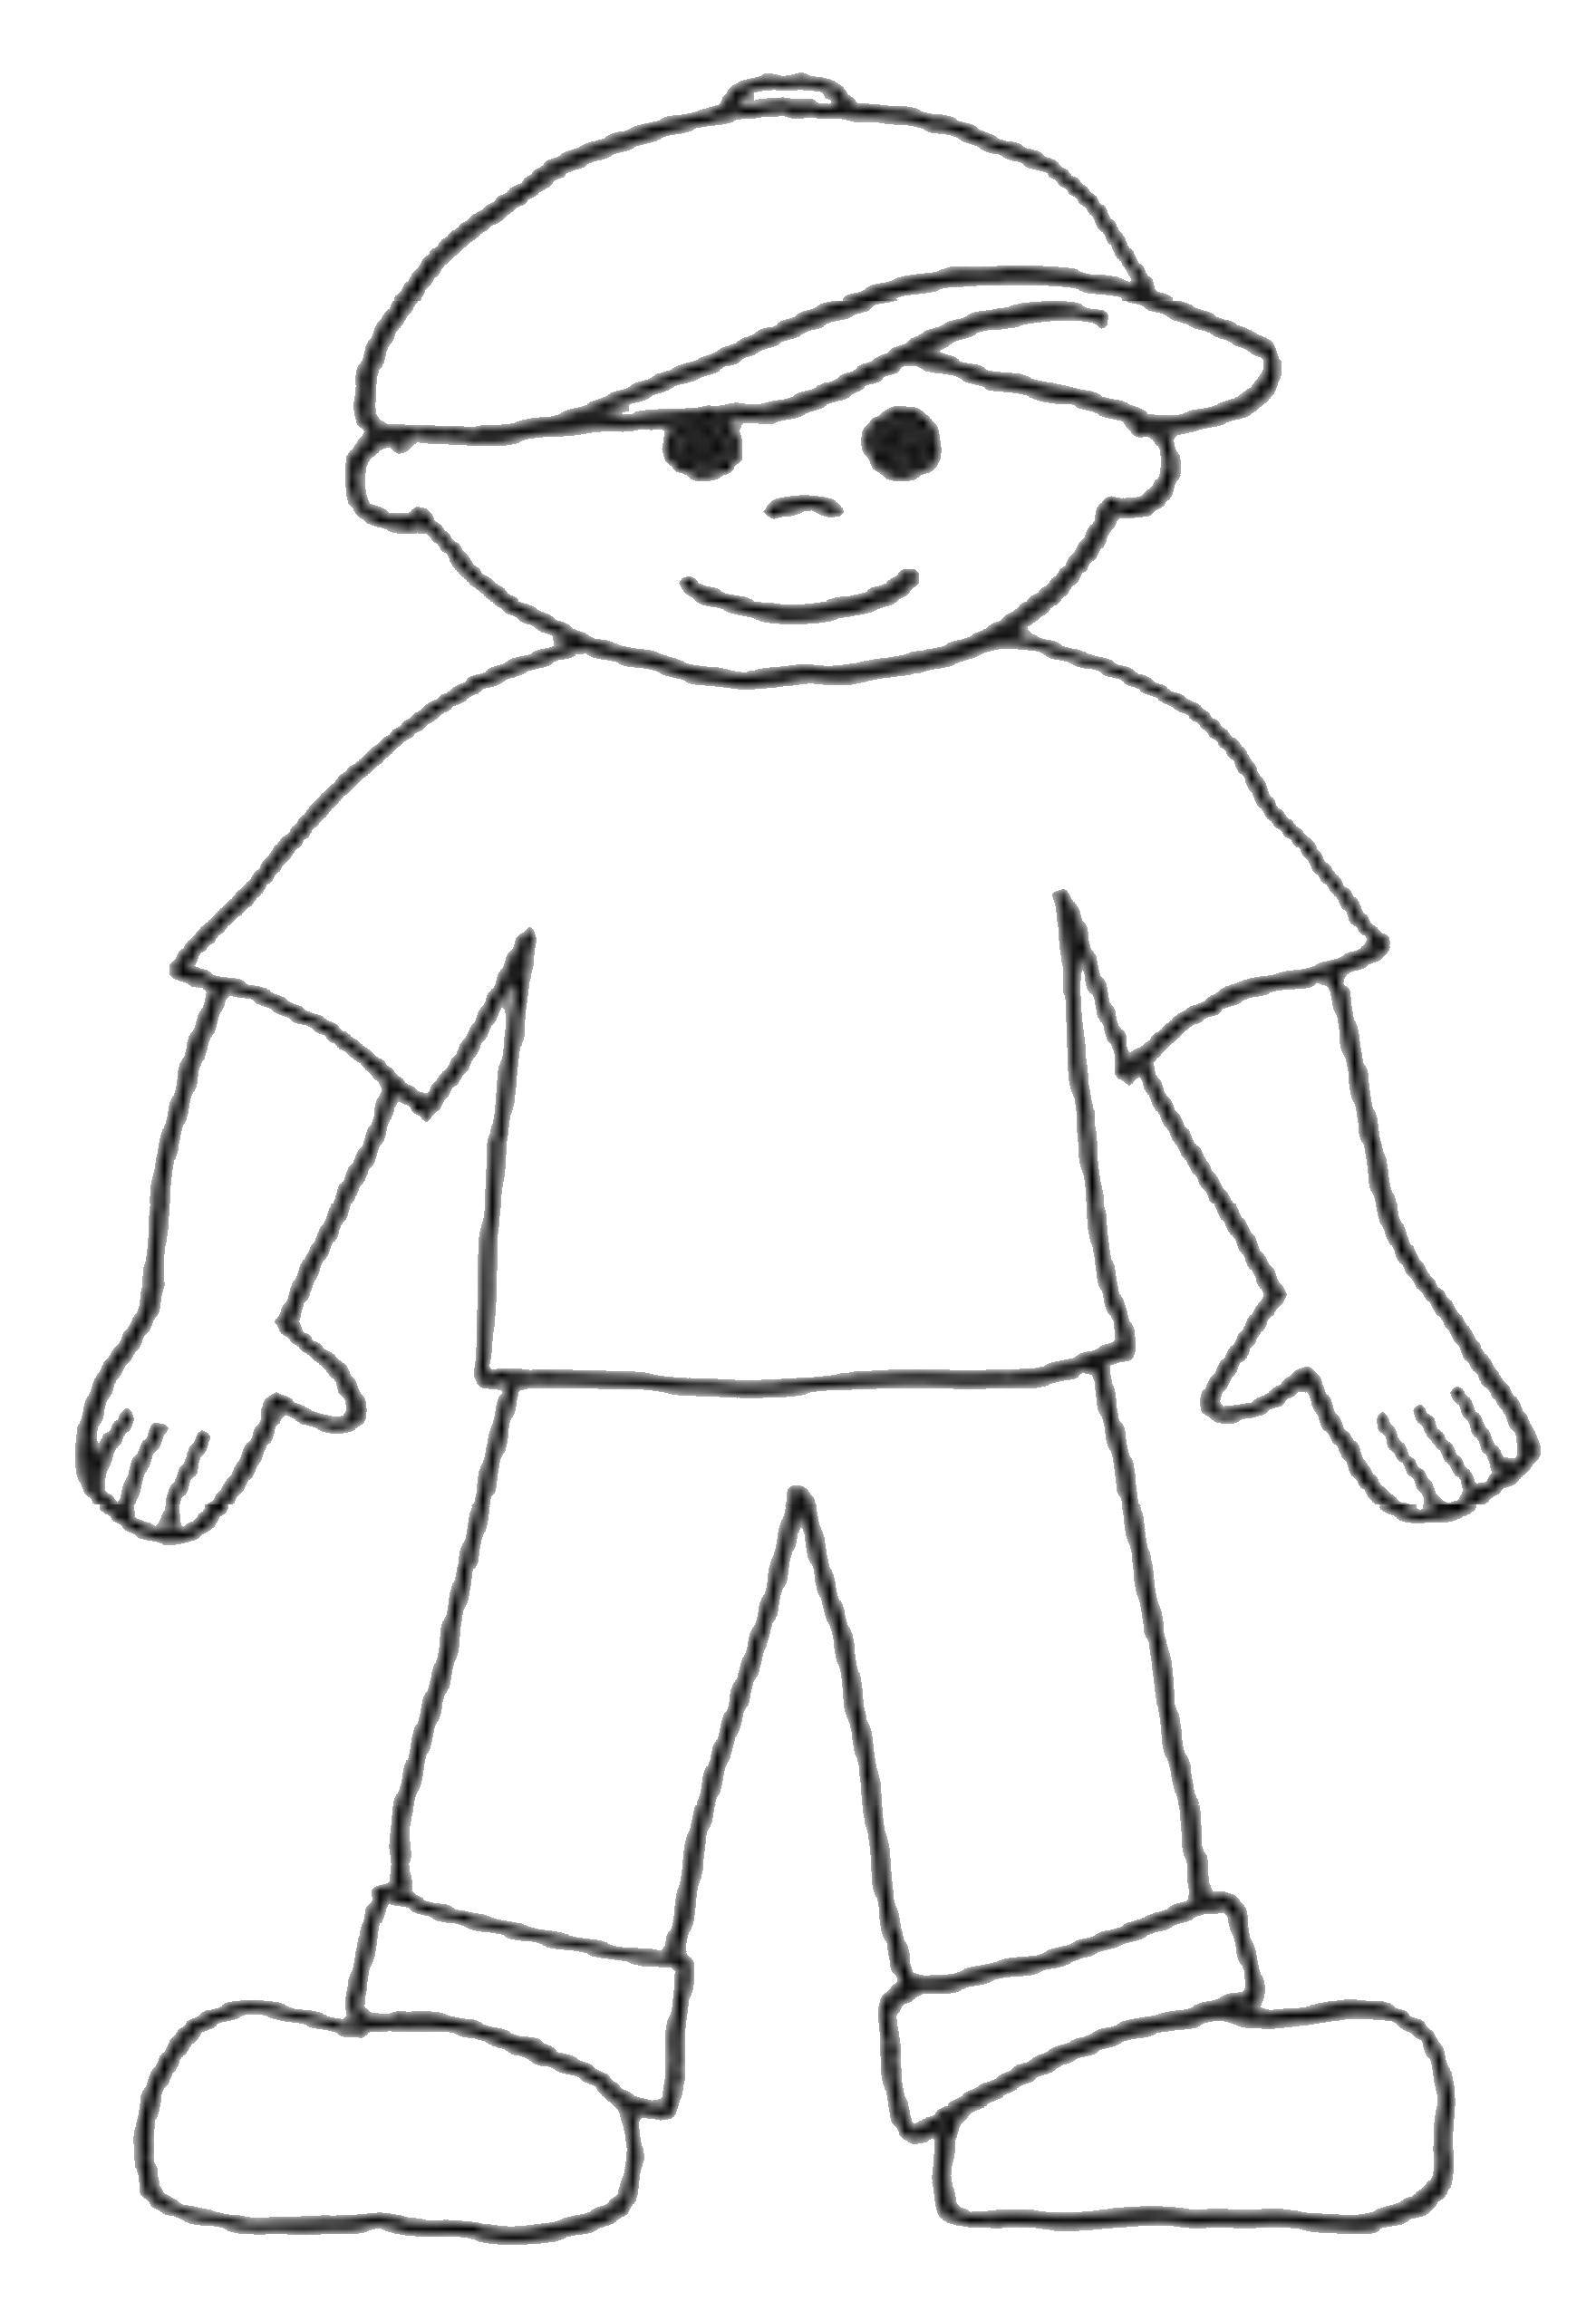 Опис: розмальовки  Хлопець у кепці. Категорія: контур хлопчика. Теги:  хлопчик, кепка, футболка.